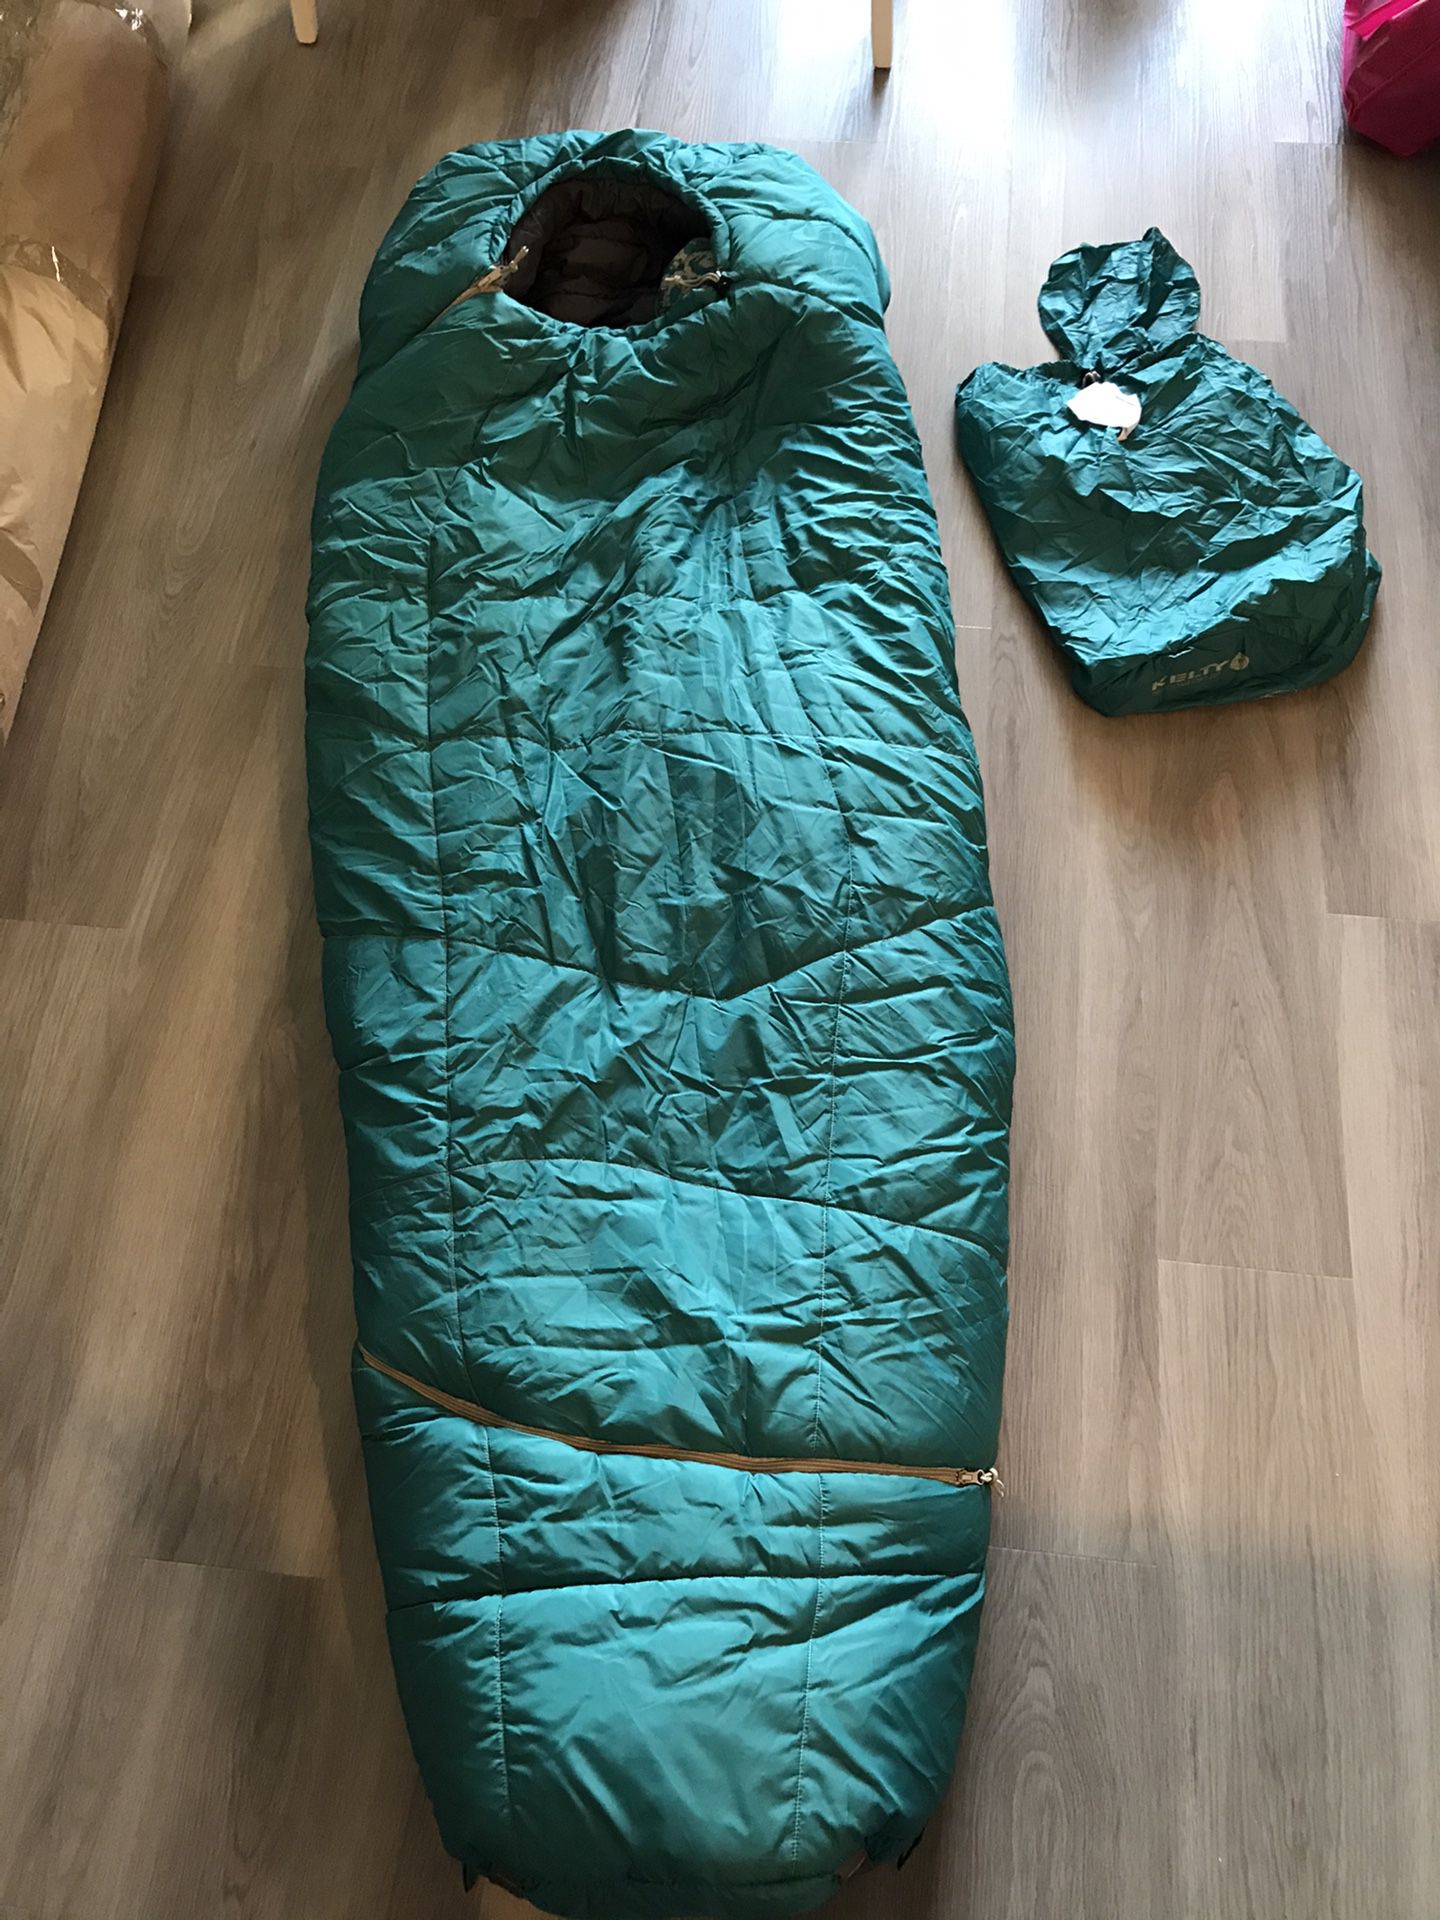 Kelty women’s tru comfort sleeping bag (20 degrees)